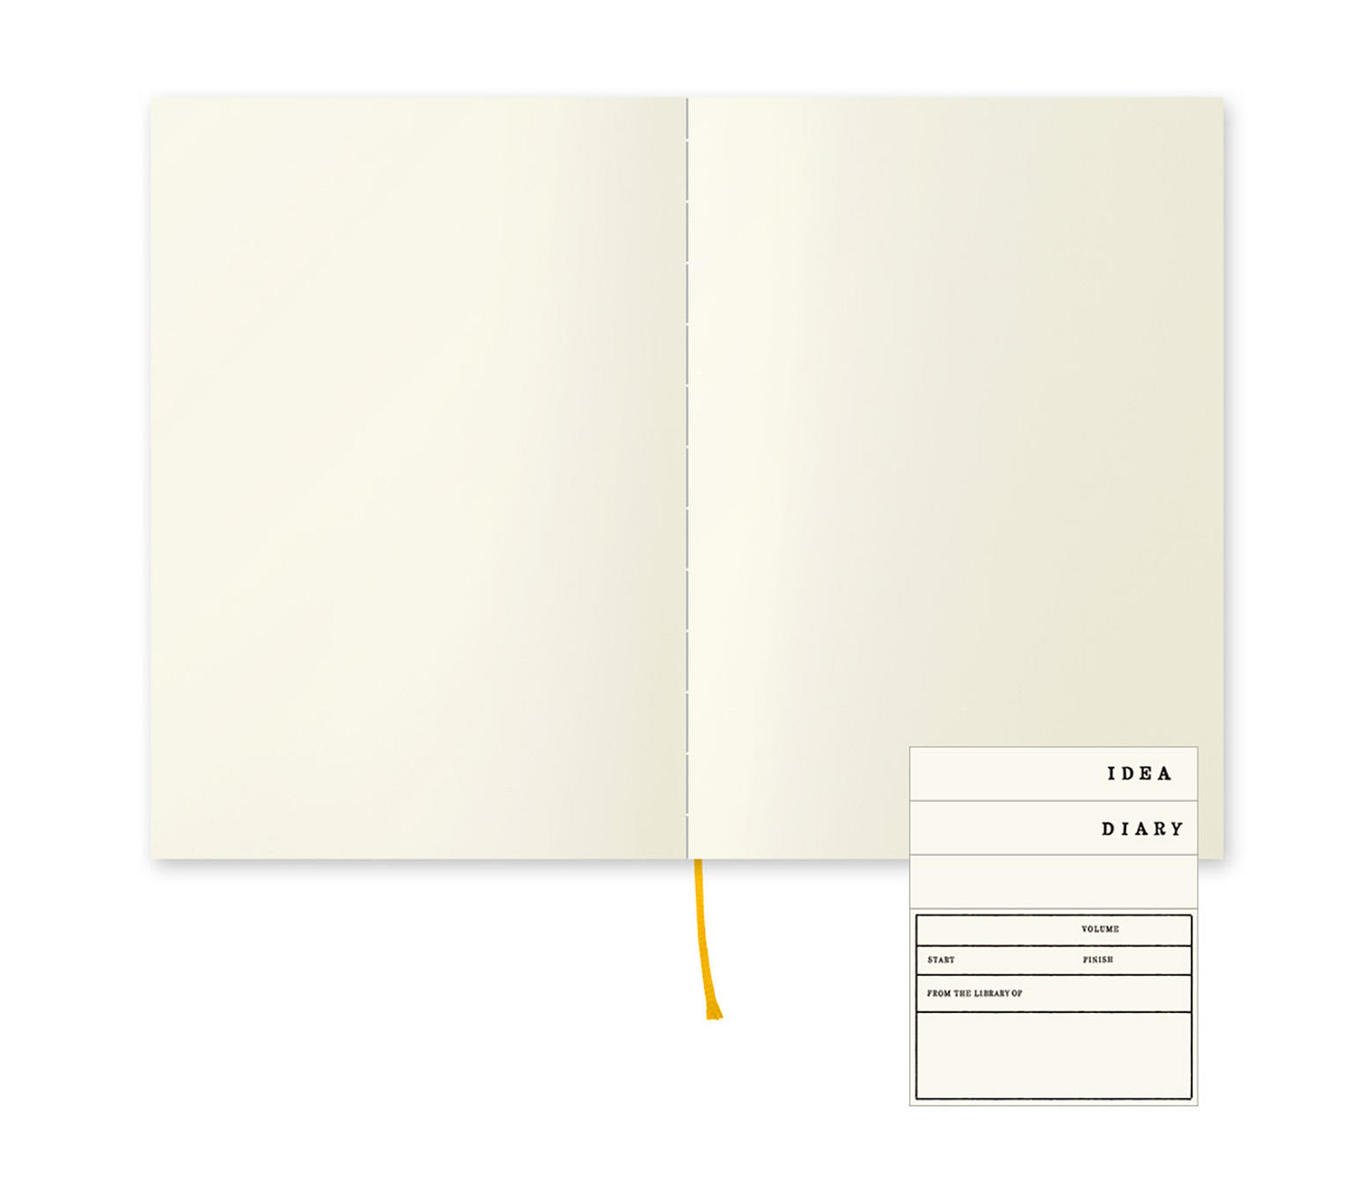 Midori MD Notebook, A5